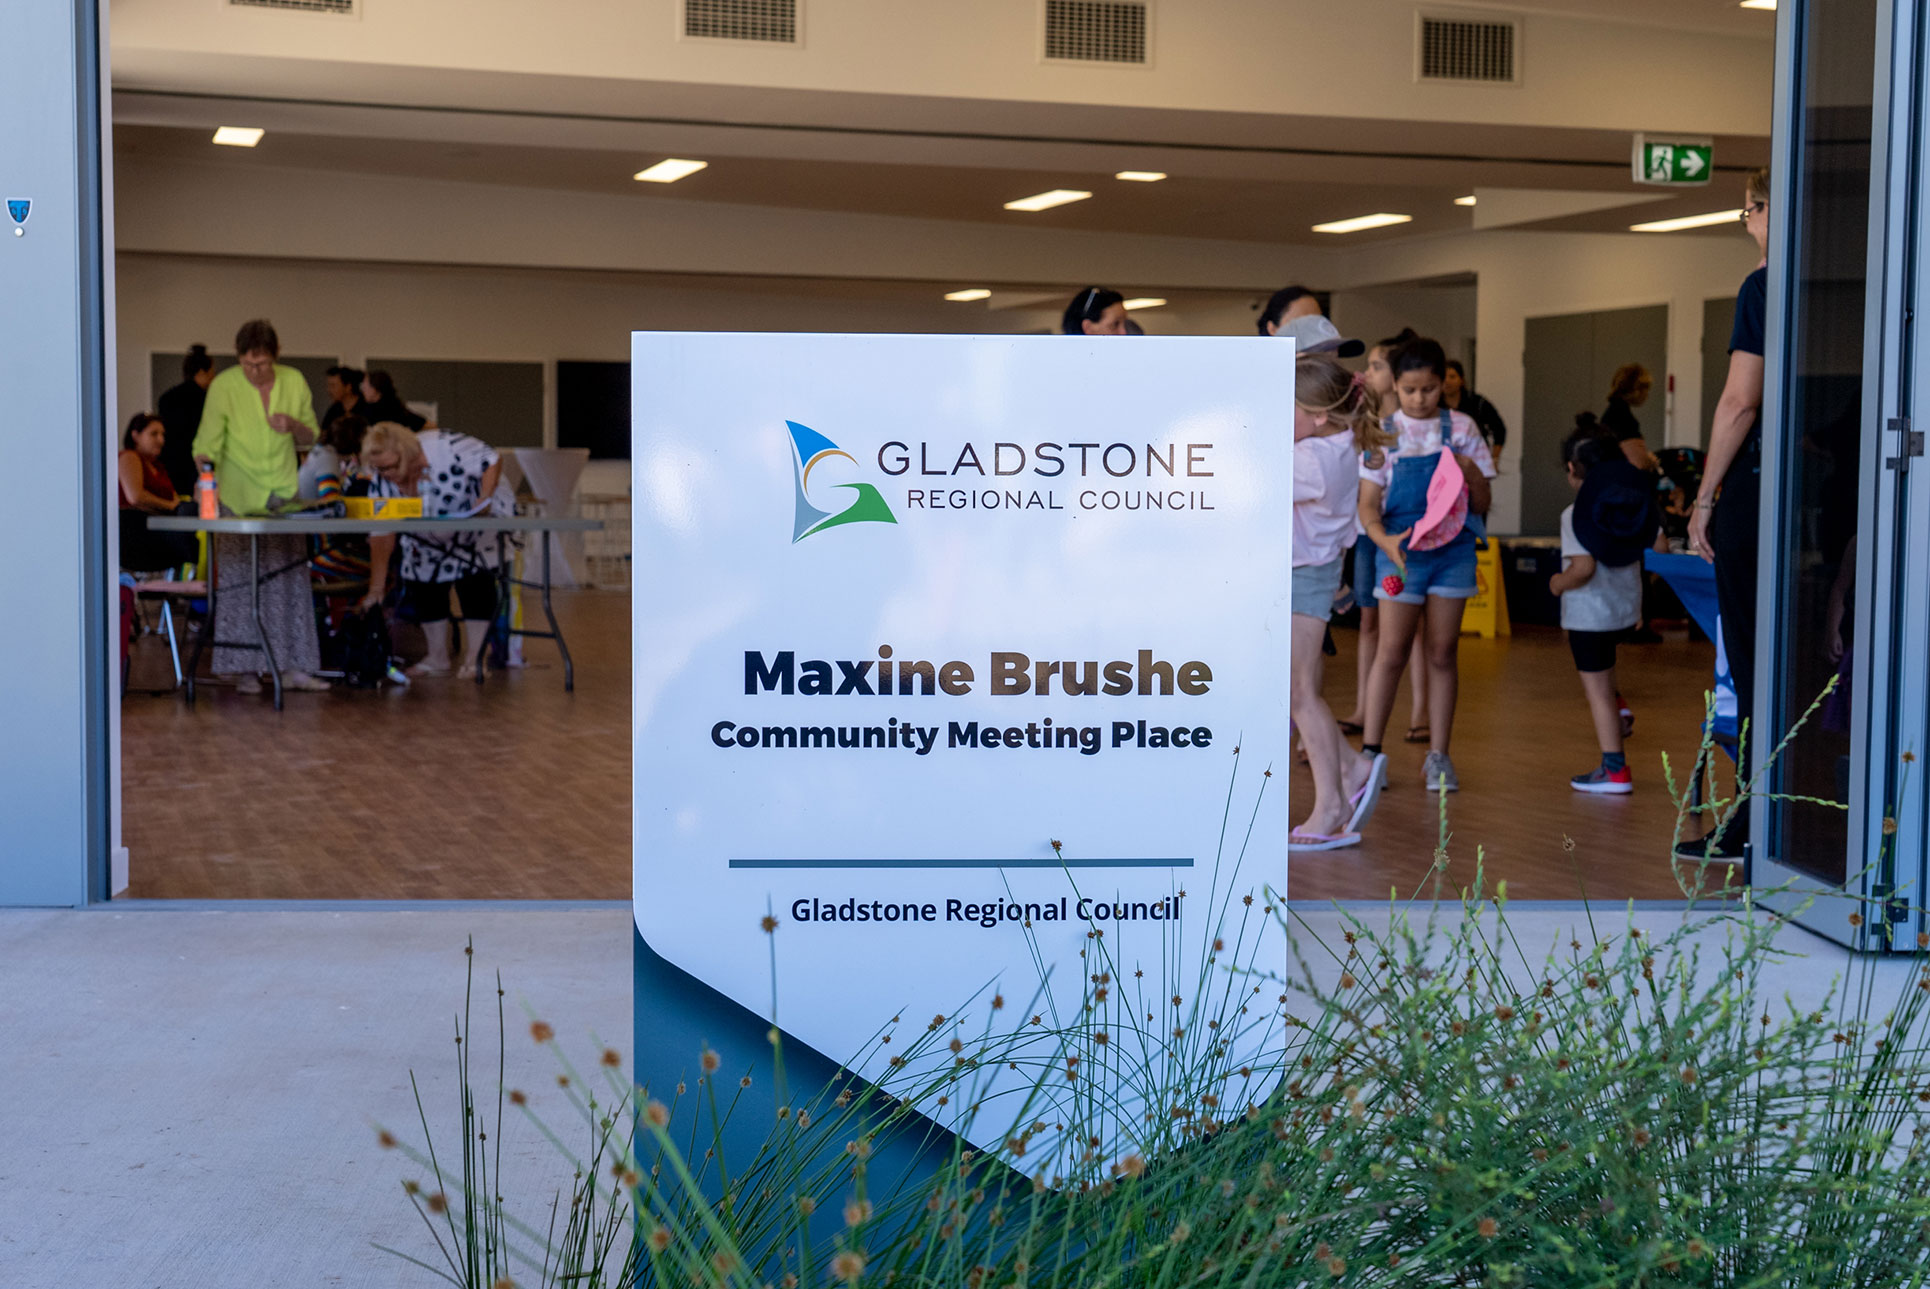 Maxine Brushe Community Meeting Place